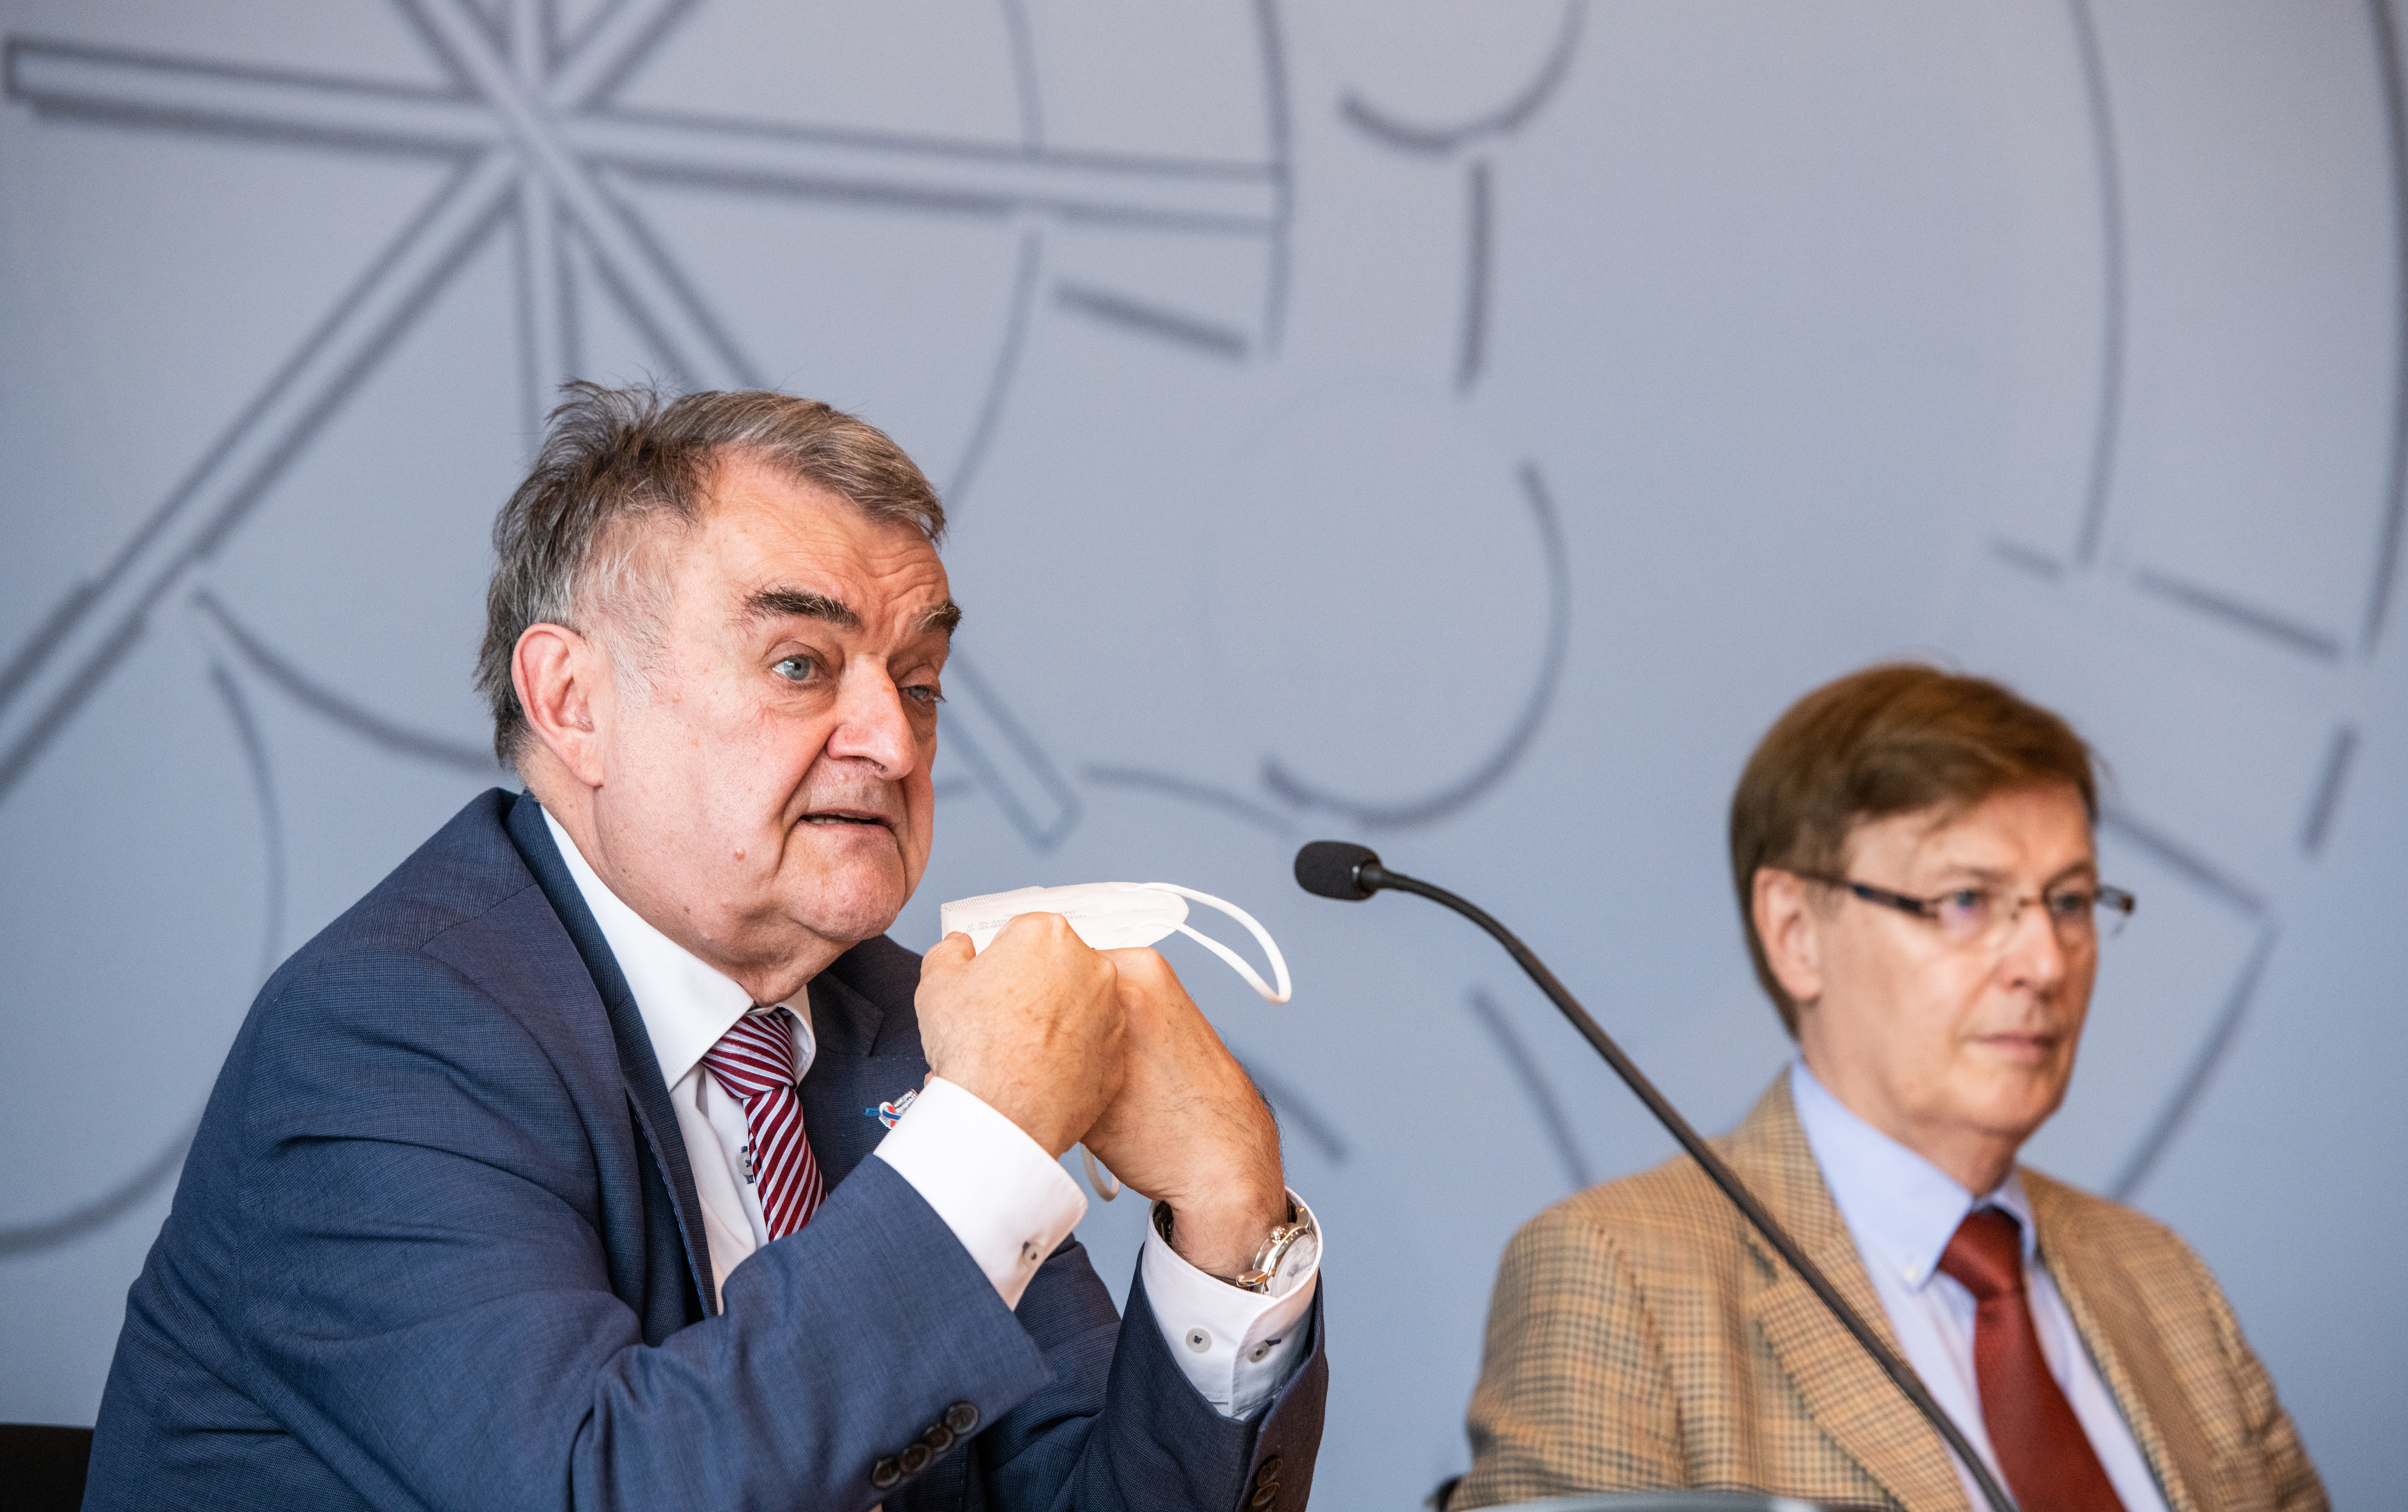 Pressekonferenz: Minister Peter Biesenbach und Minister Herbert Reul stellen die elektronische Strafakte vor